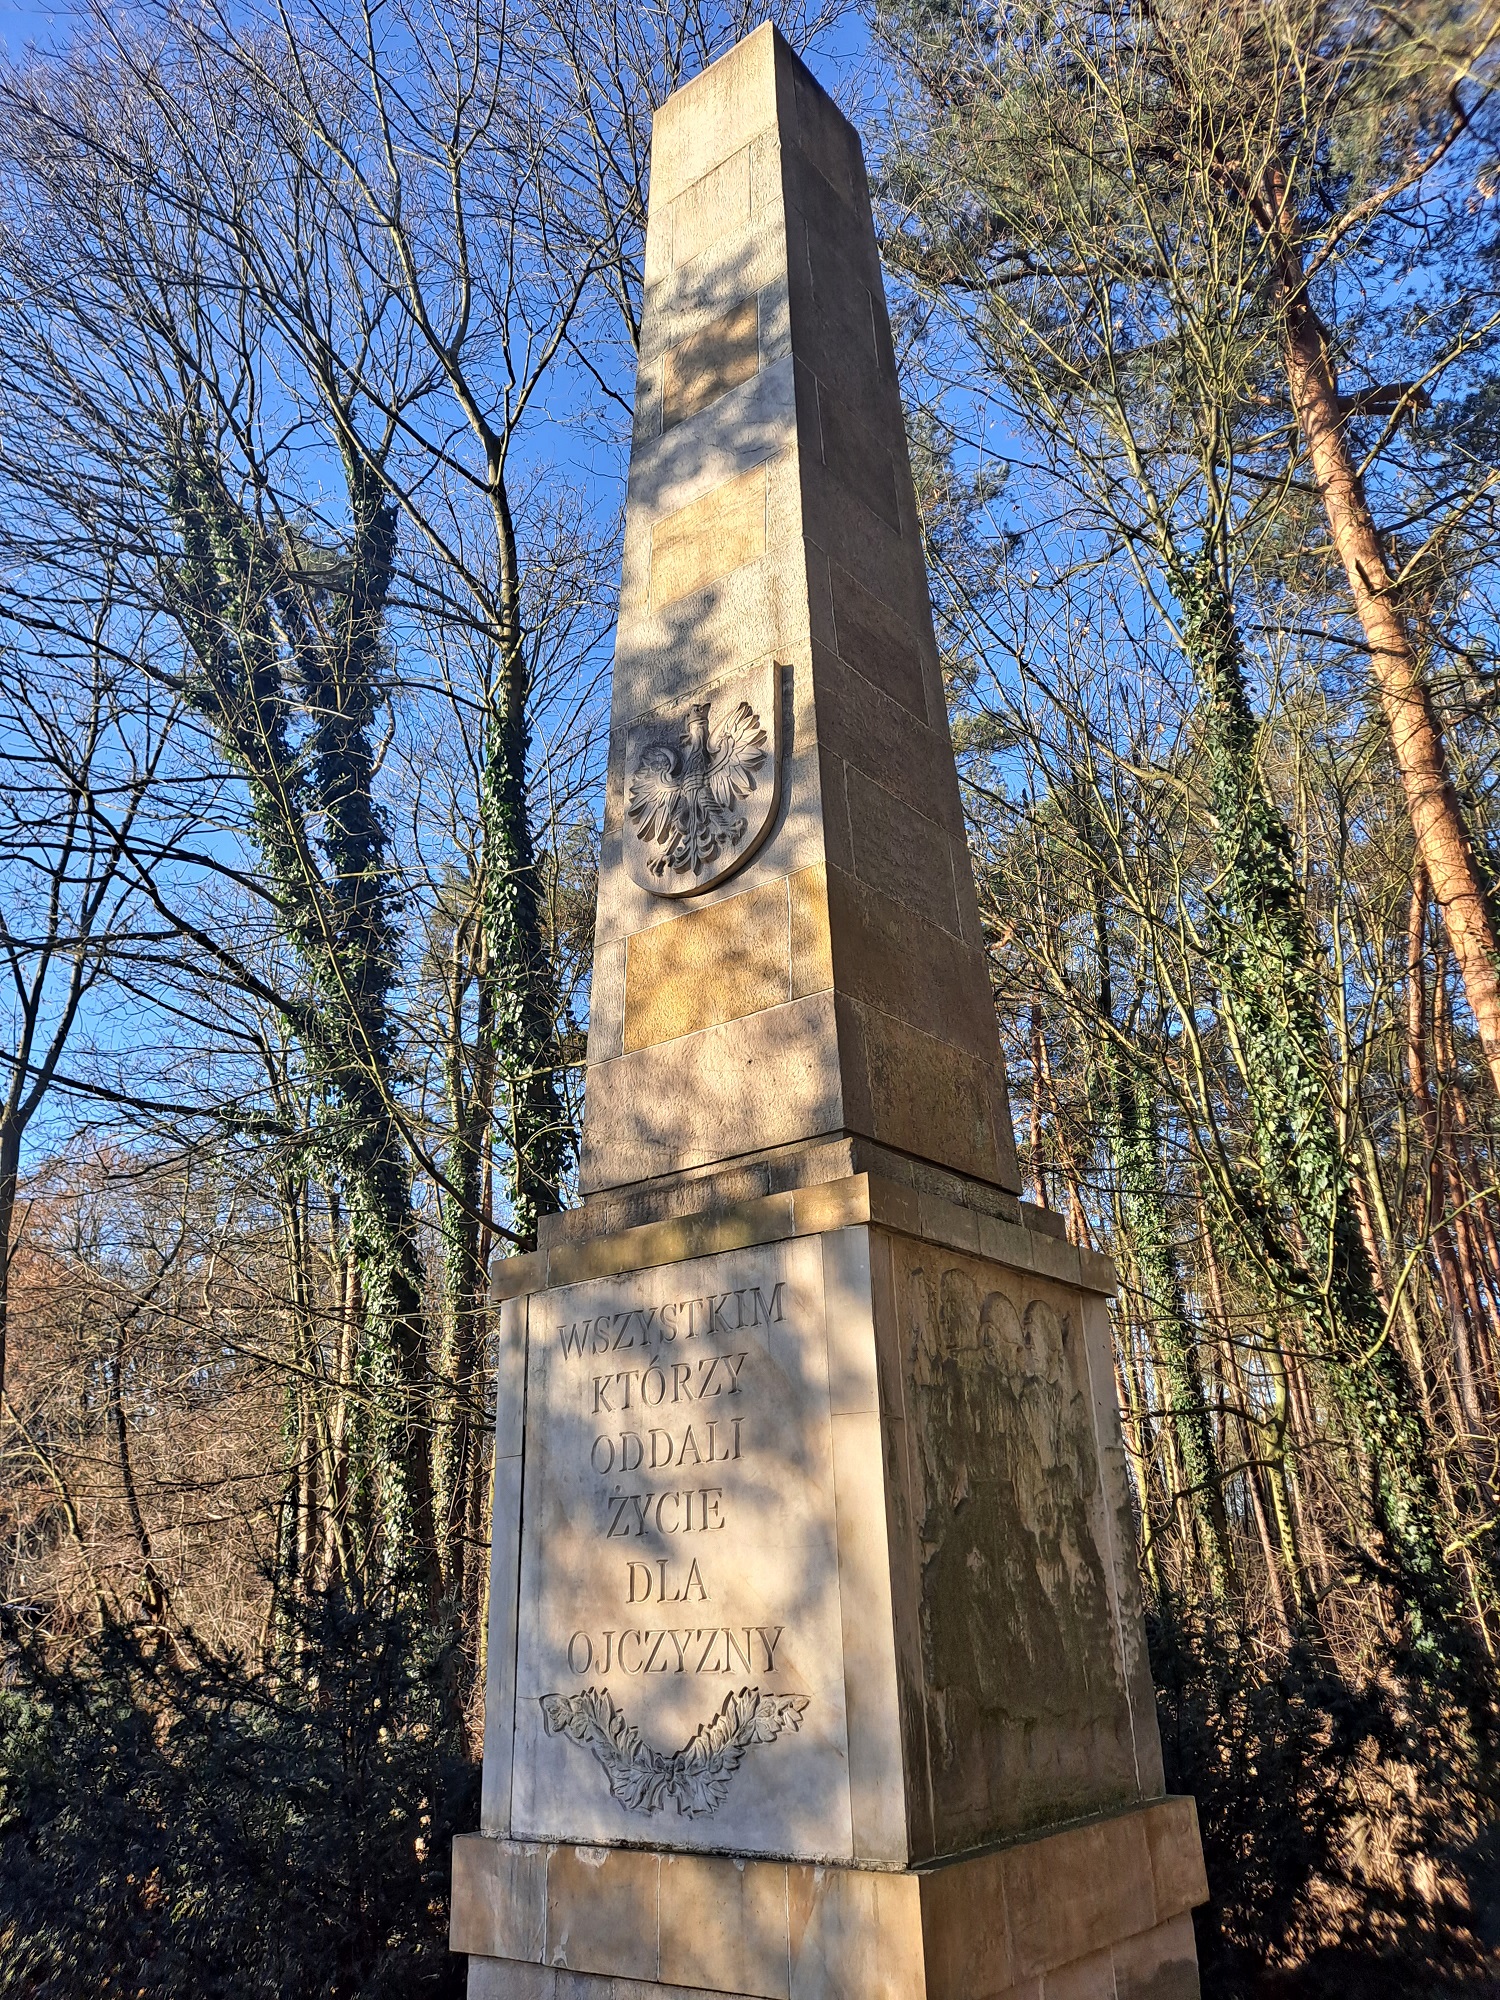 Obelisk pamiątkowy z napisem "Wszystkim, którzy oddali życie dla ojczyzny". Skąpany w słońcu, wśród drzew bez liści.